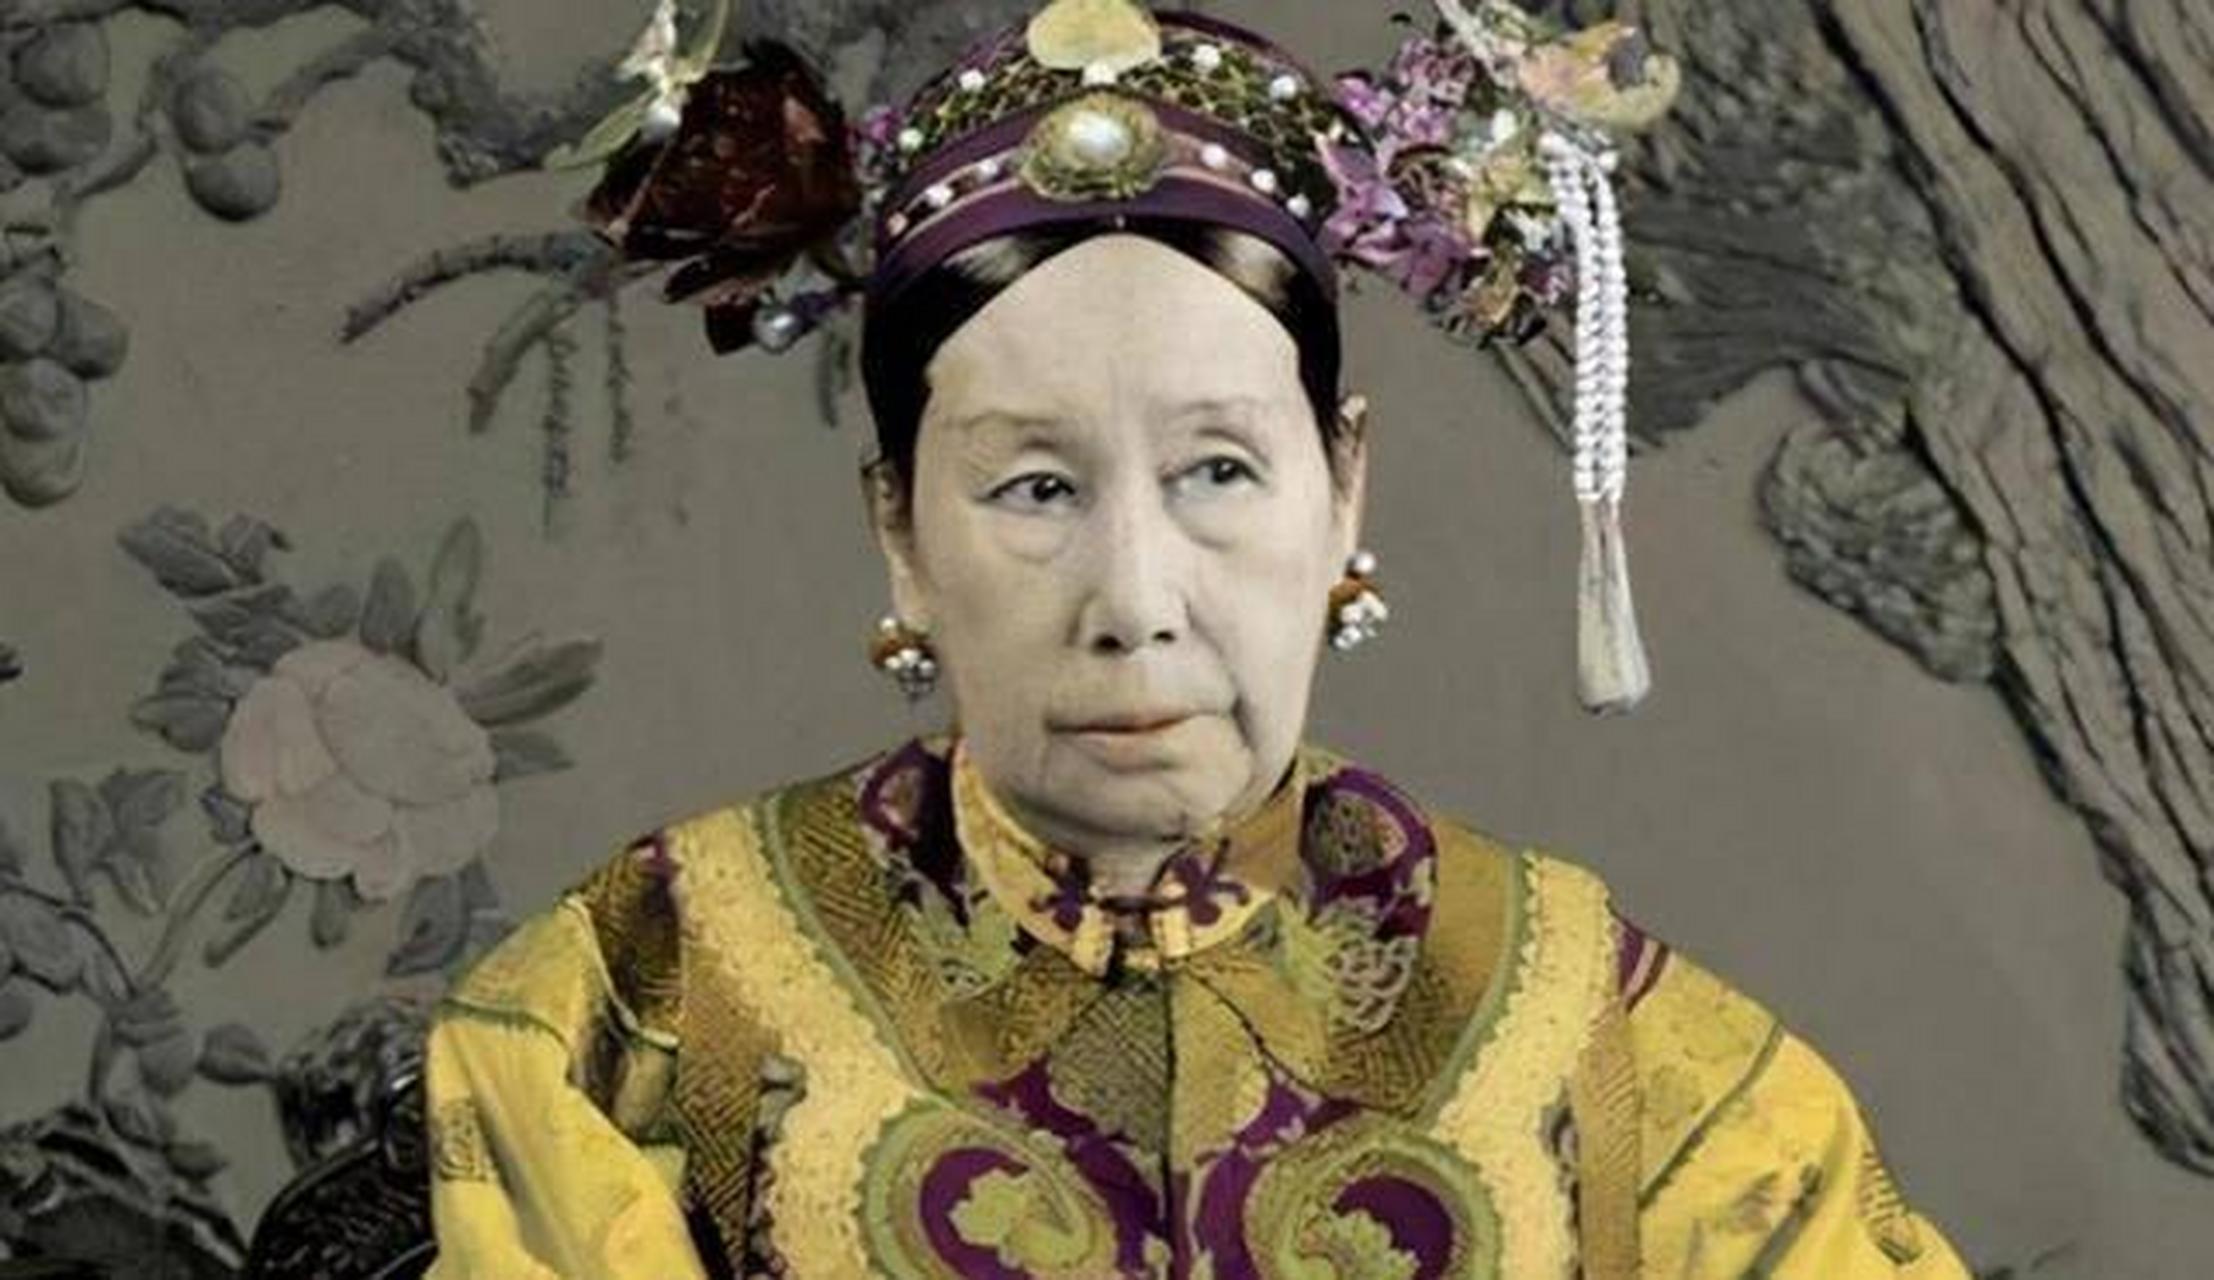 在清朝时期,珍妃是光绪皇帝最受宠爱的妃子之一!她年轻貌美,性格开朗,